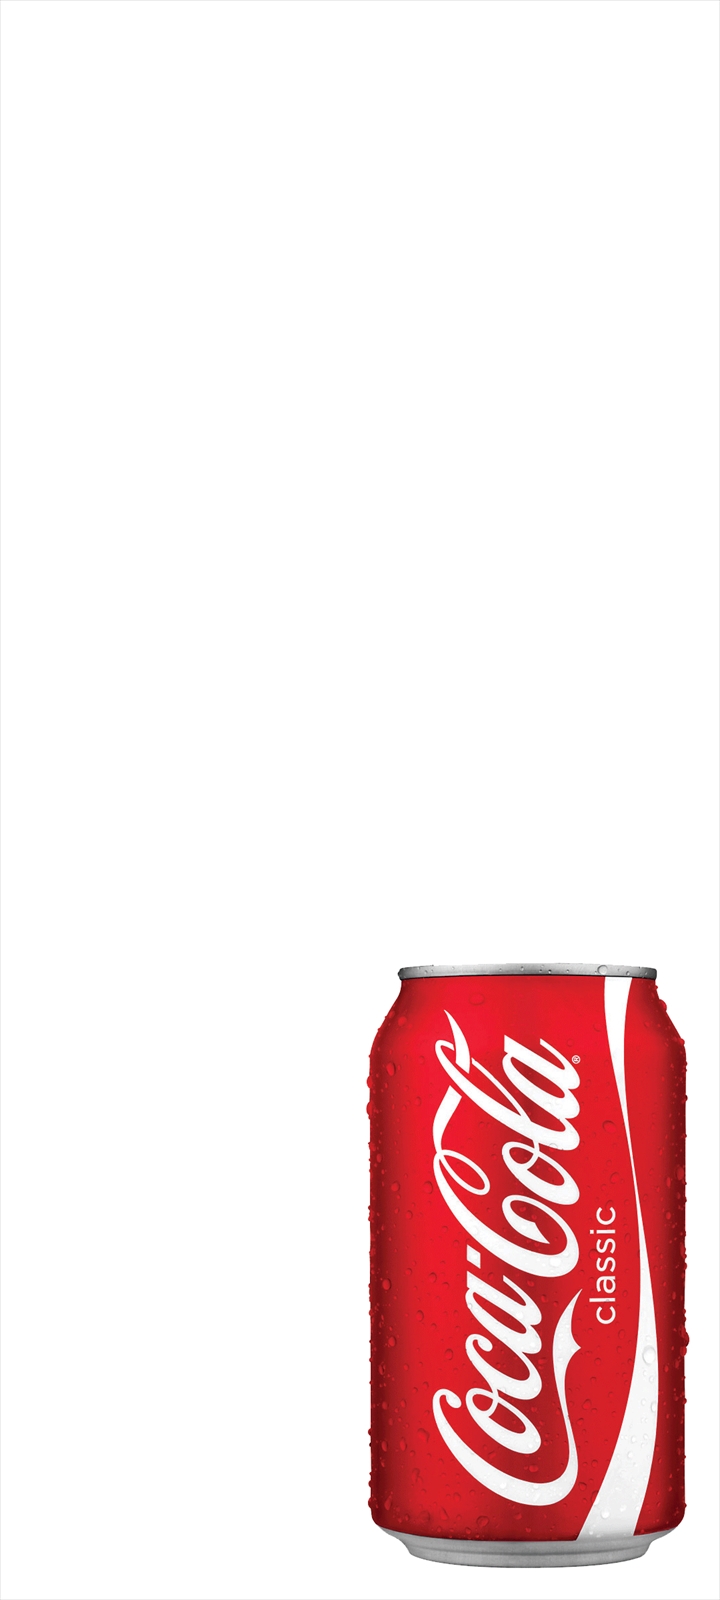 コカ コーラ 缶 Oppo A5 壁紙 待ち受け スマラン